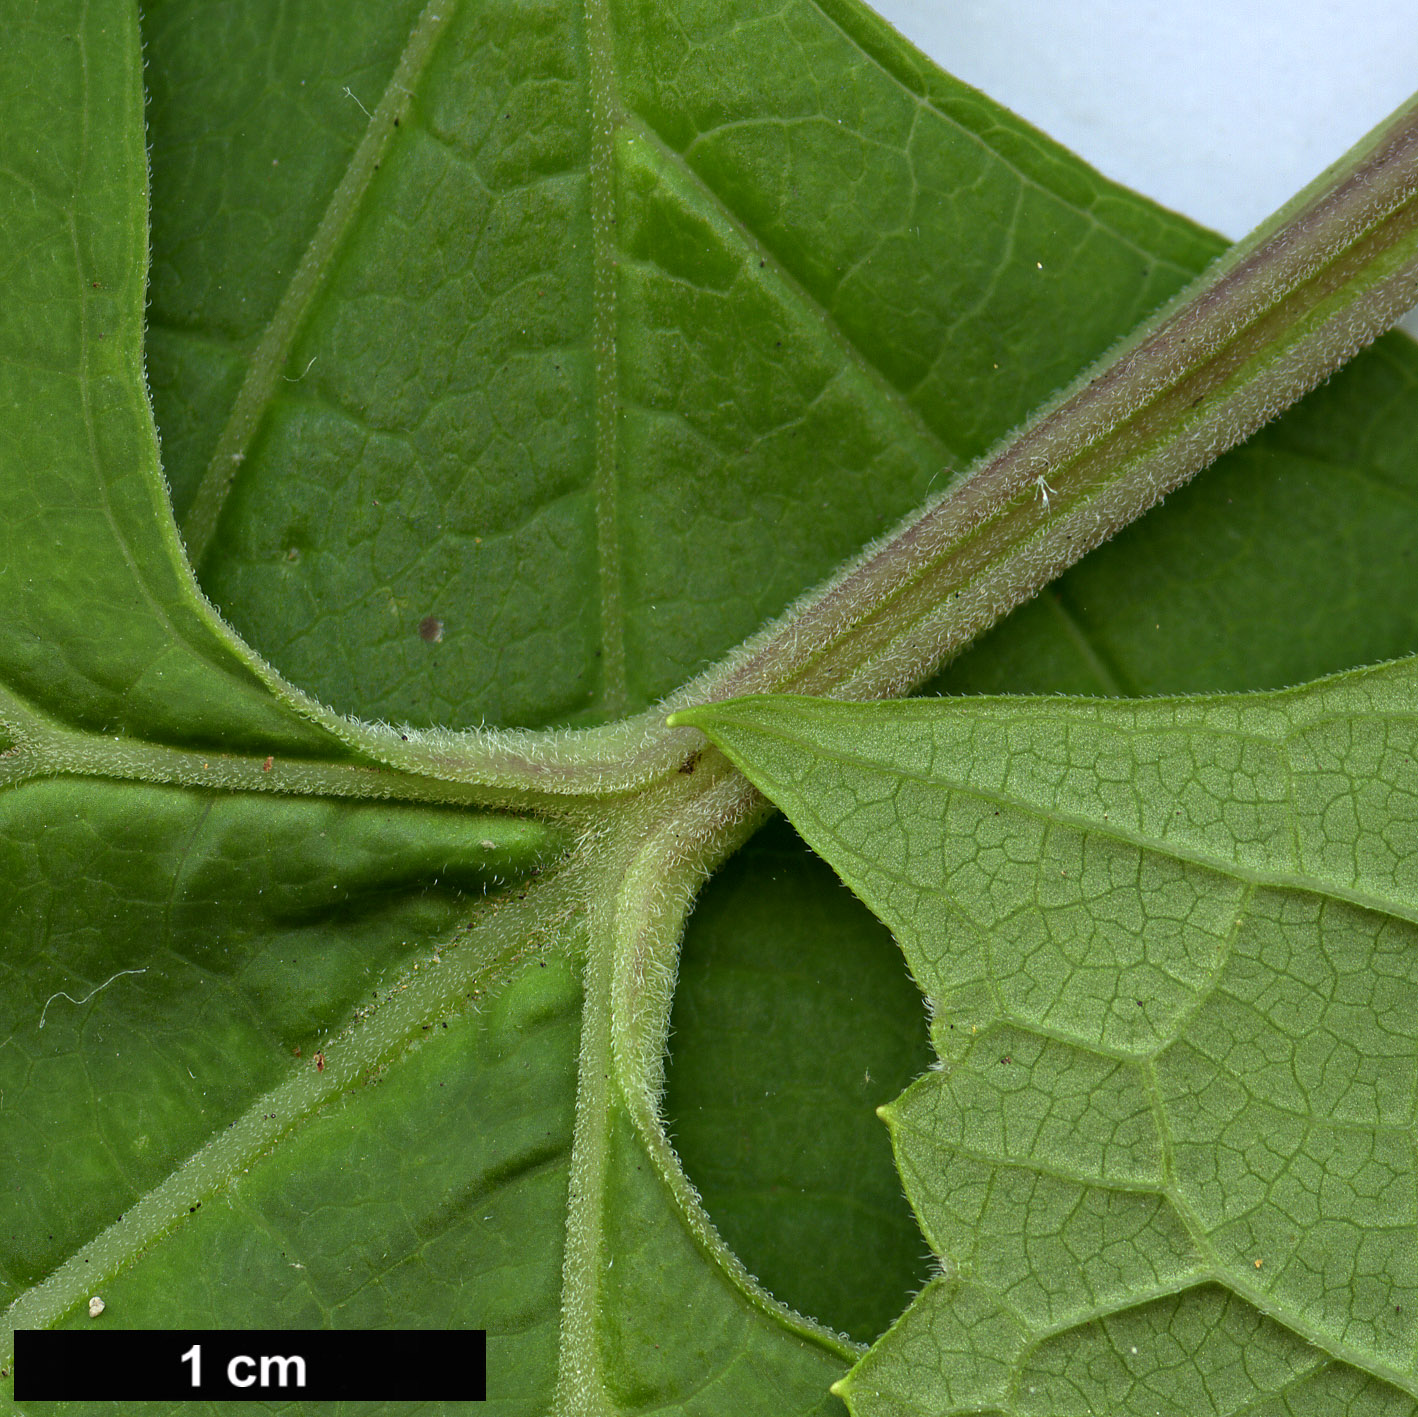 High resolution image: Family: Torricelliaceae - Genus: Torricellia - Taxon: angulata